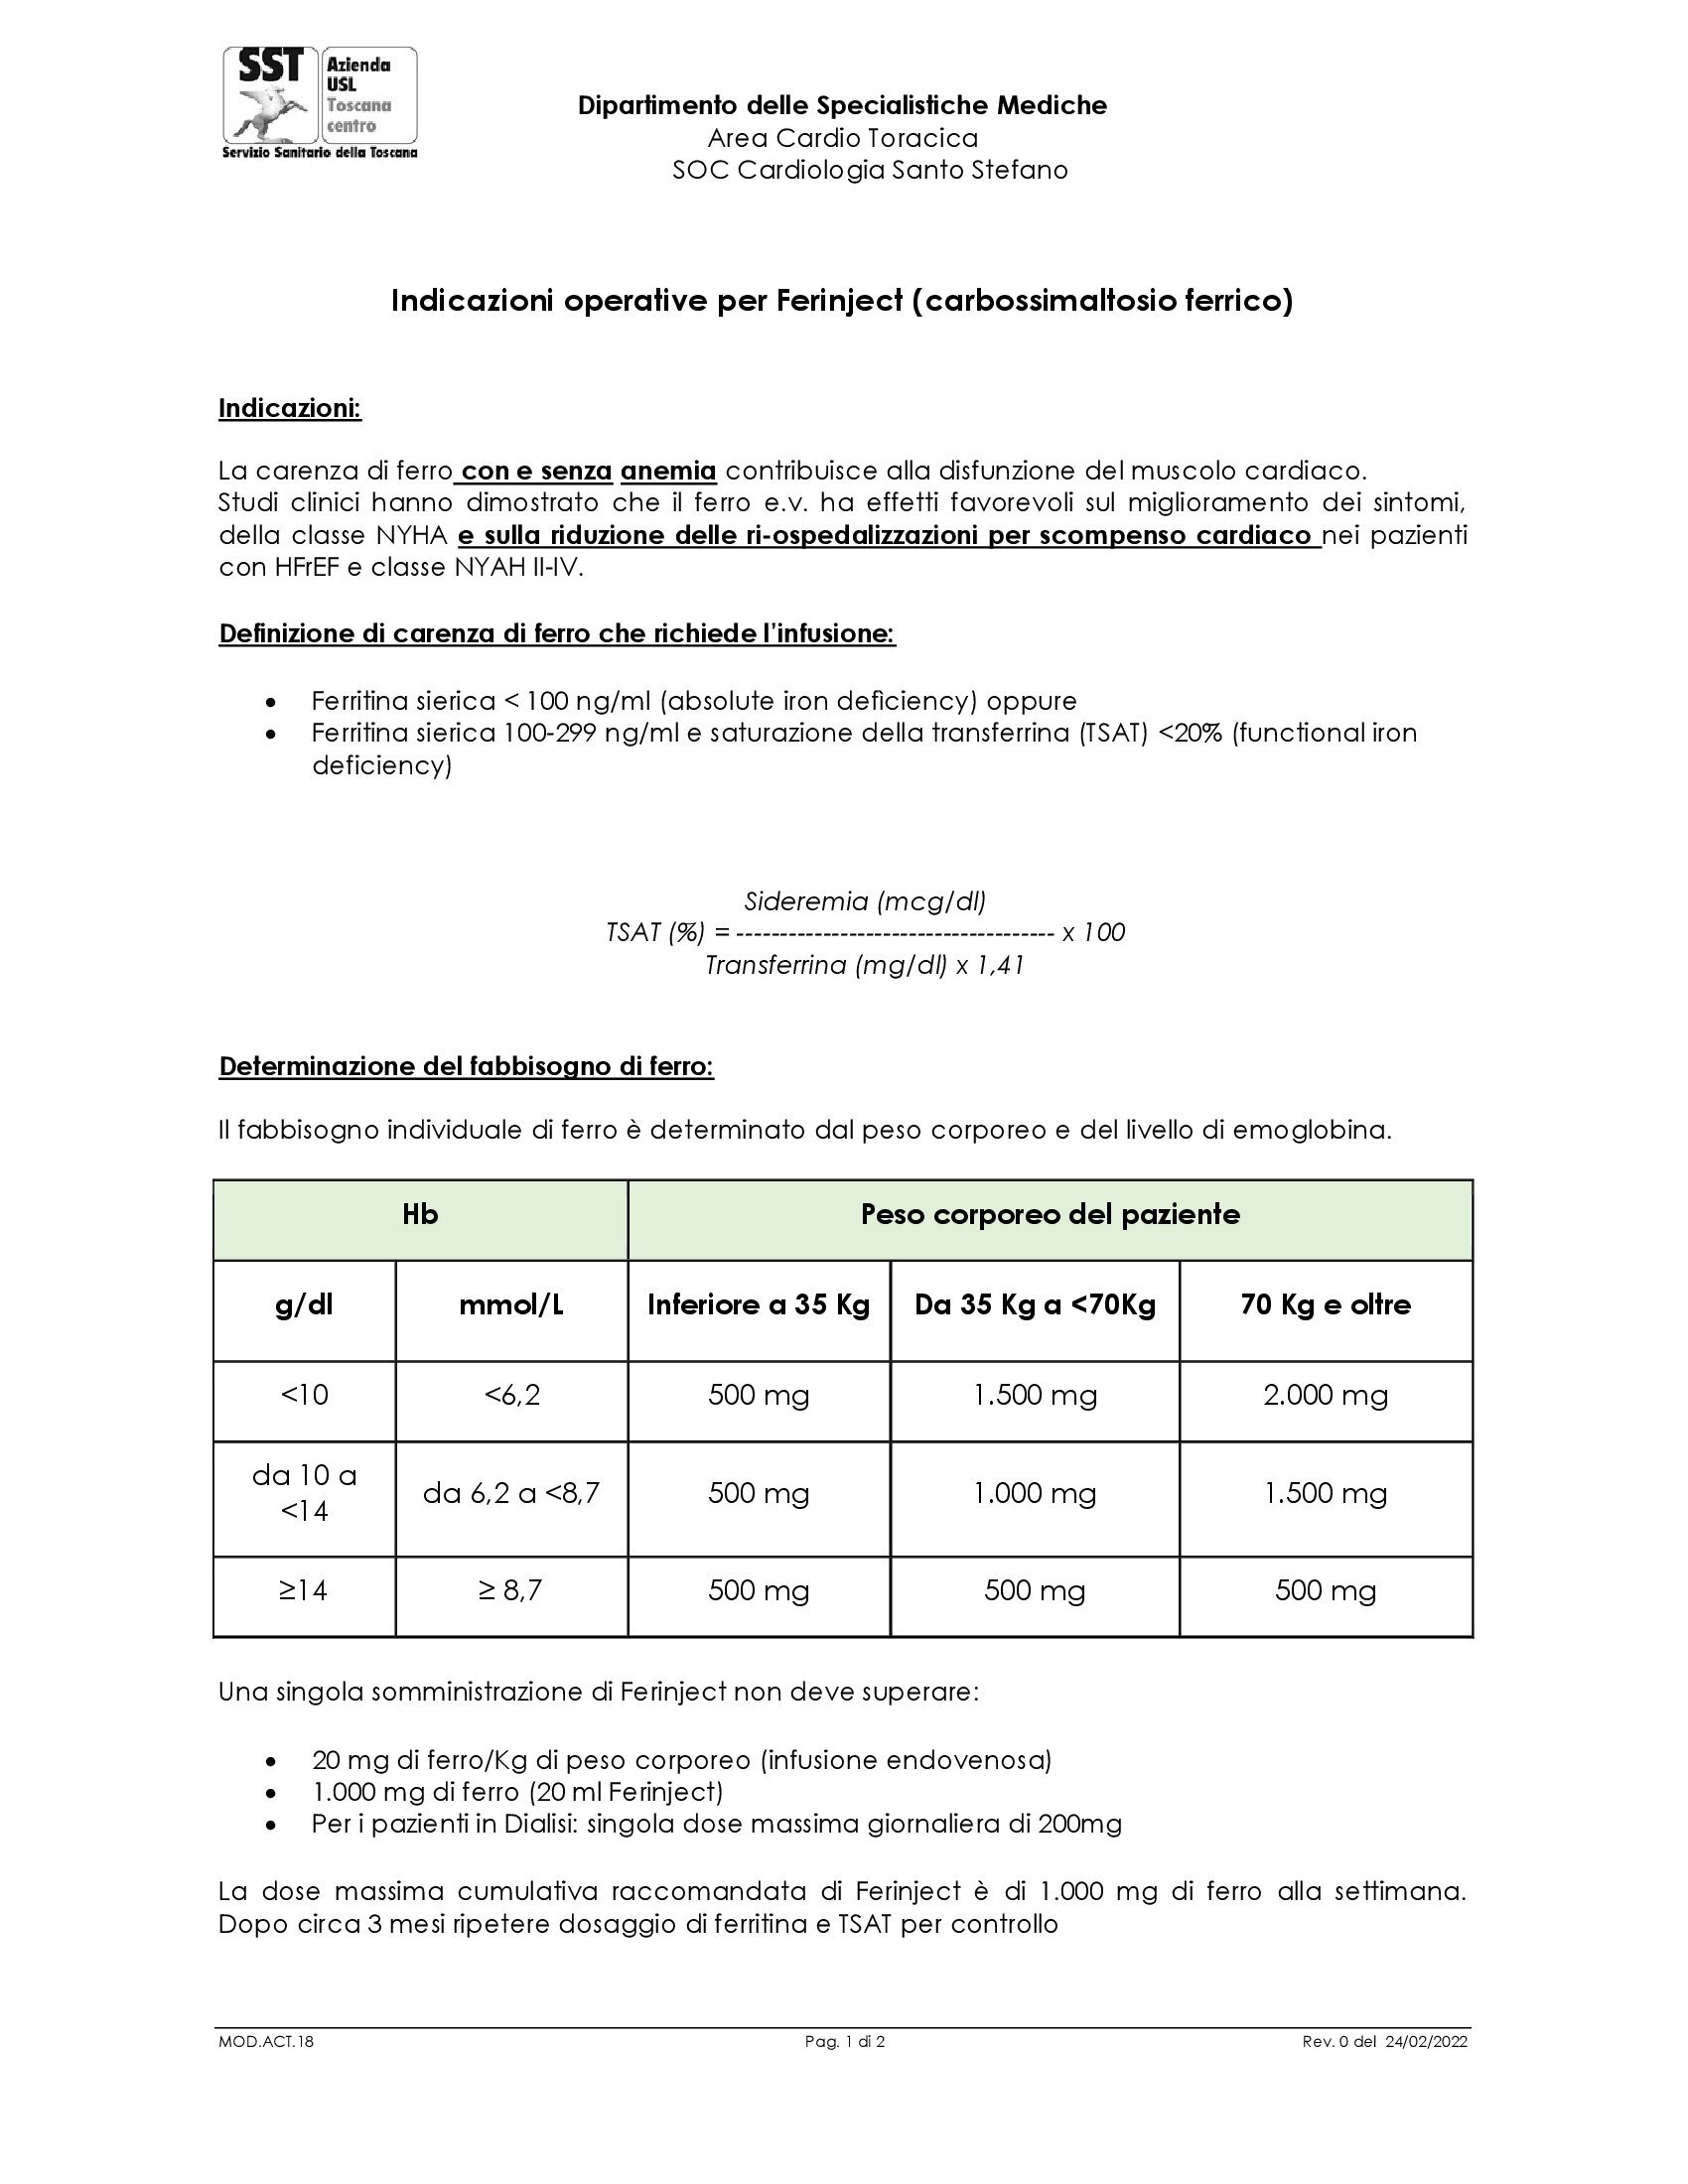 MOD.ACT.18 Indicazioni operative per Ferinject (carbossimaltosio ferrico)